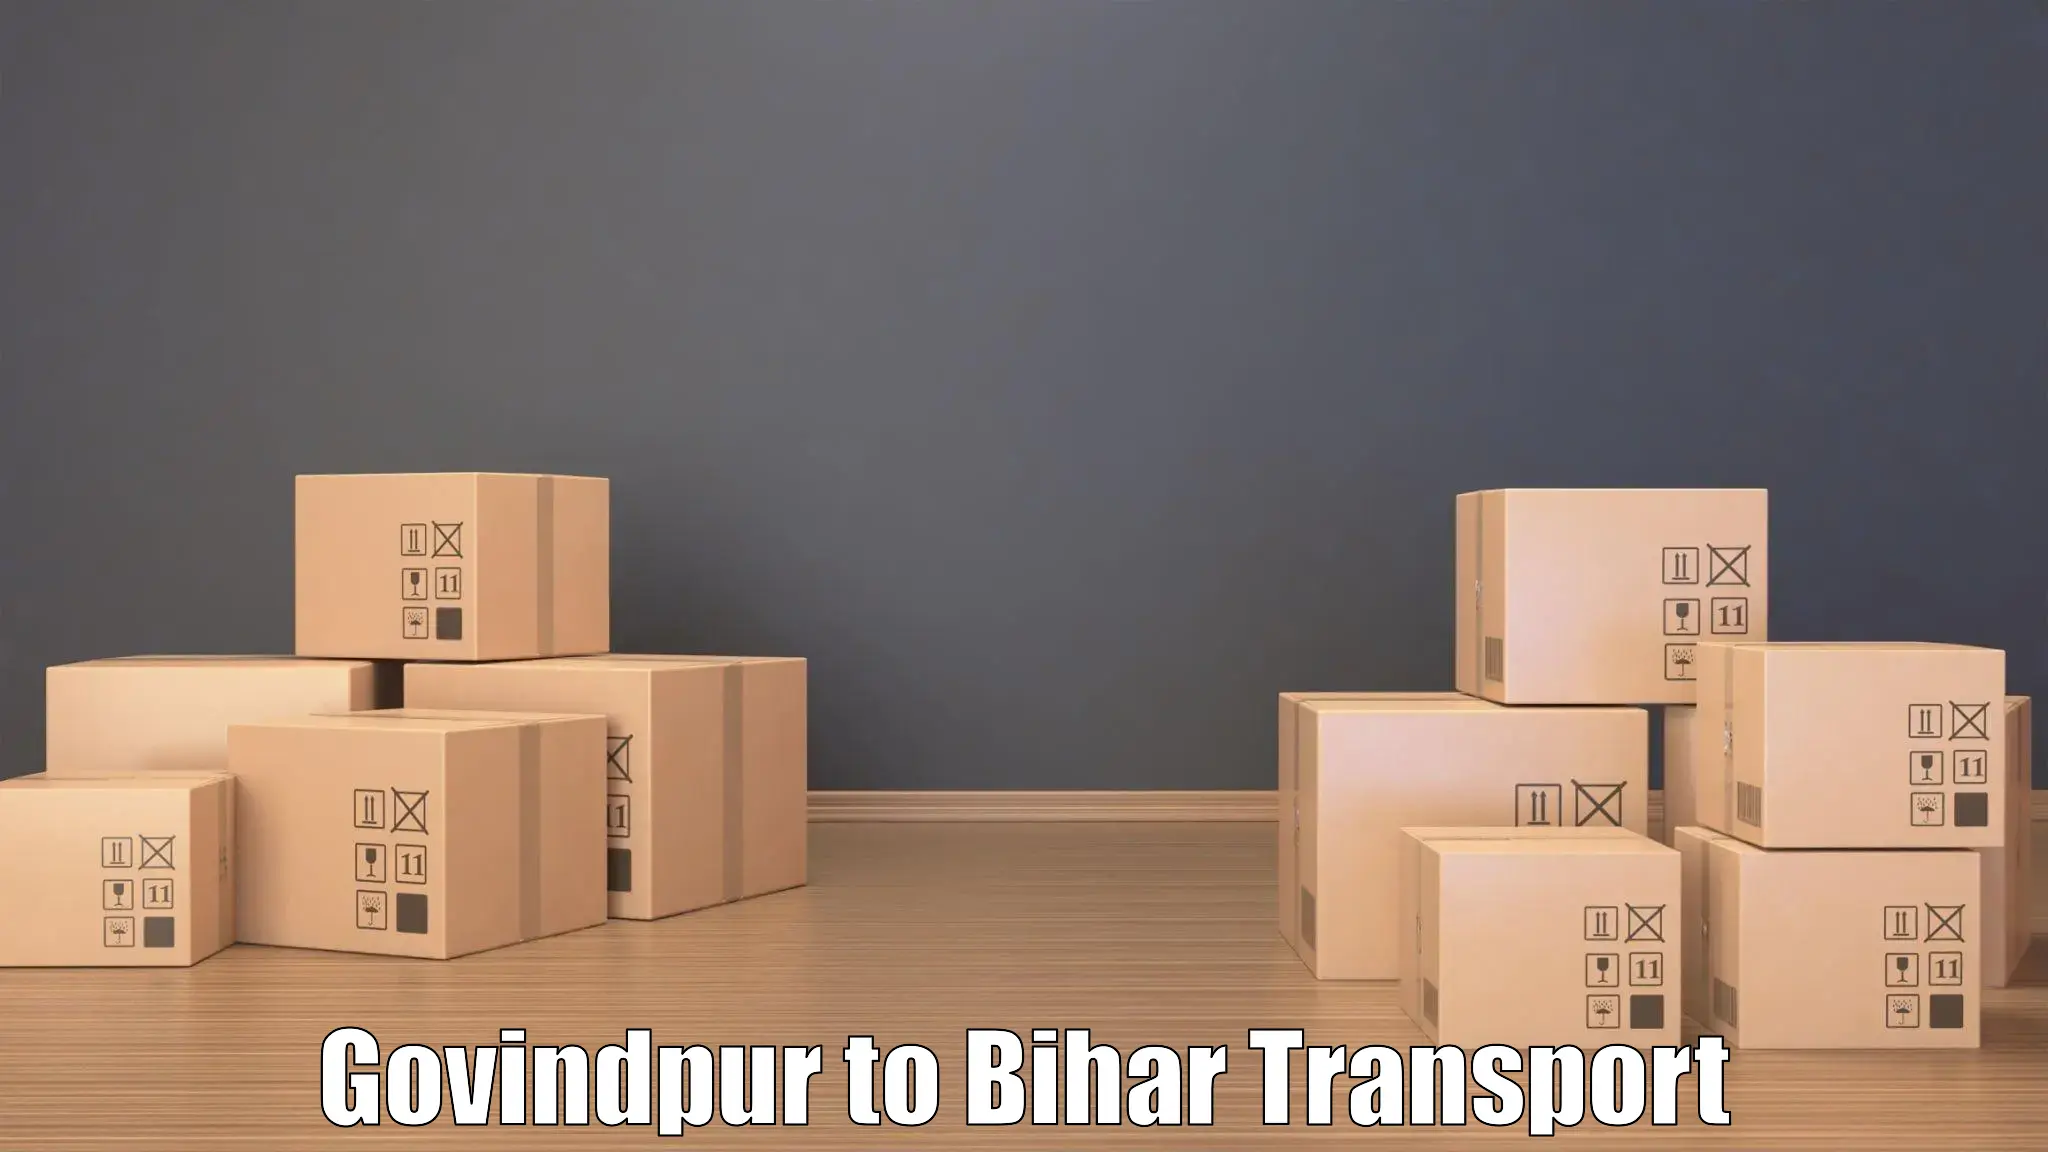 Furniture transport service Govindpur to Sikandara Jamui